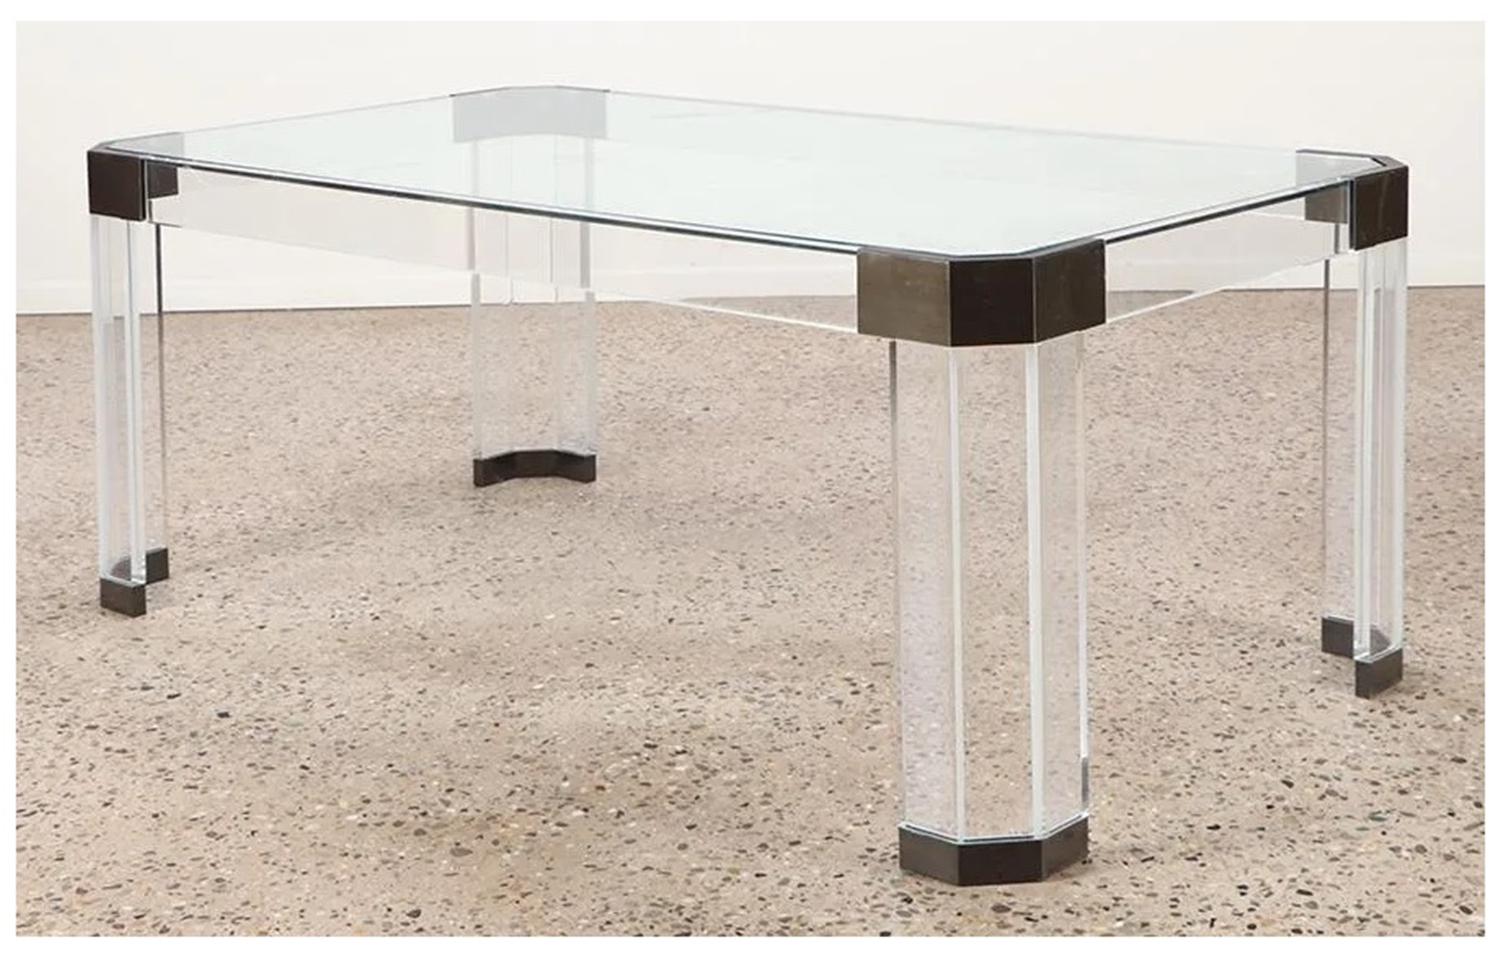 Wir stellen den Esstisch aus Lucite, Glas und Messing von Charles Hollis Jones vor, ein atemberaubendes Möbelstück aus den USA der 1970er Jahre. Dieser rechteckige Tisch hat eine klare Glasplatte, die die exquisiten Akzente aus antikem Messing an